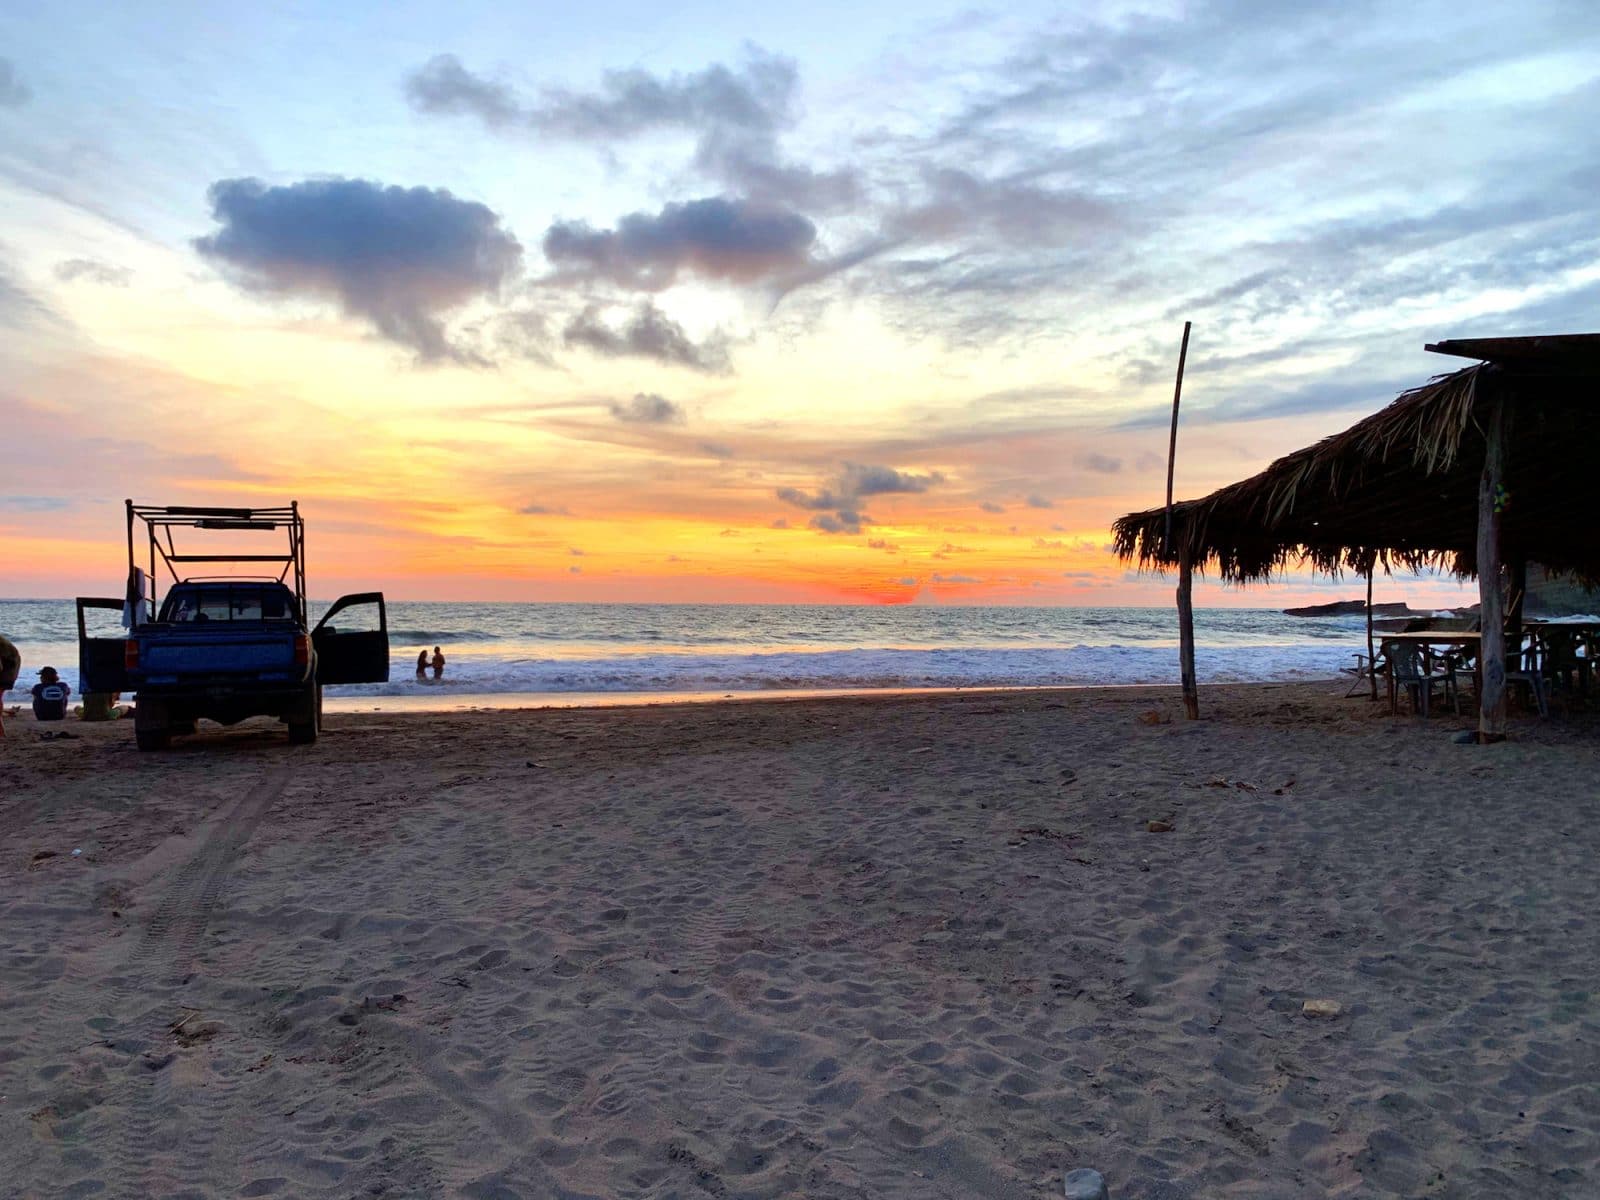  Beach - San Juan Del Sur - Nicaragua